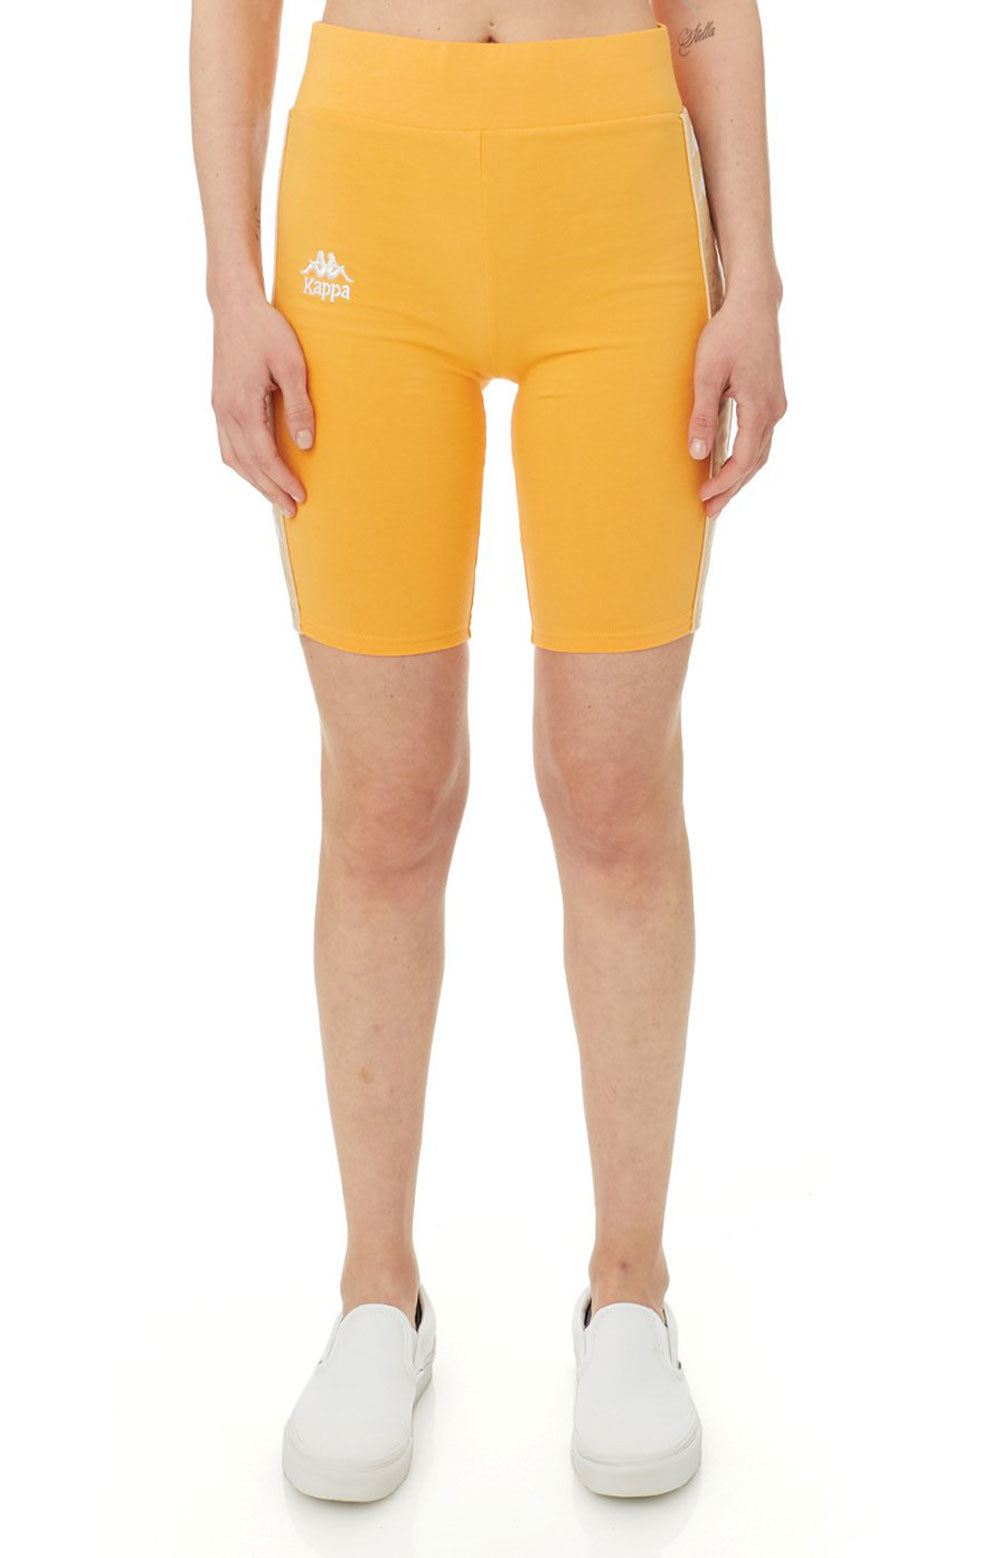 222 Banda Utuado Bike Shorts - Yellow